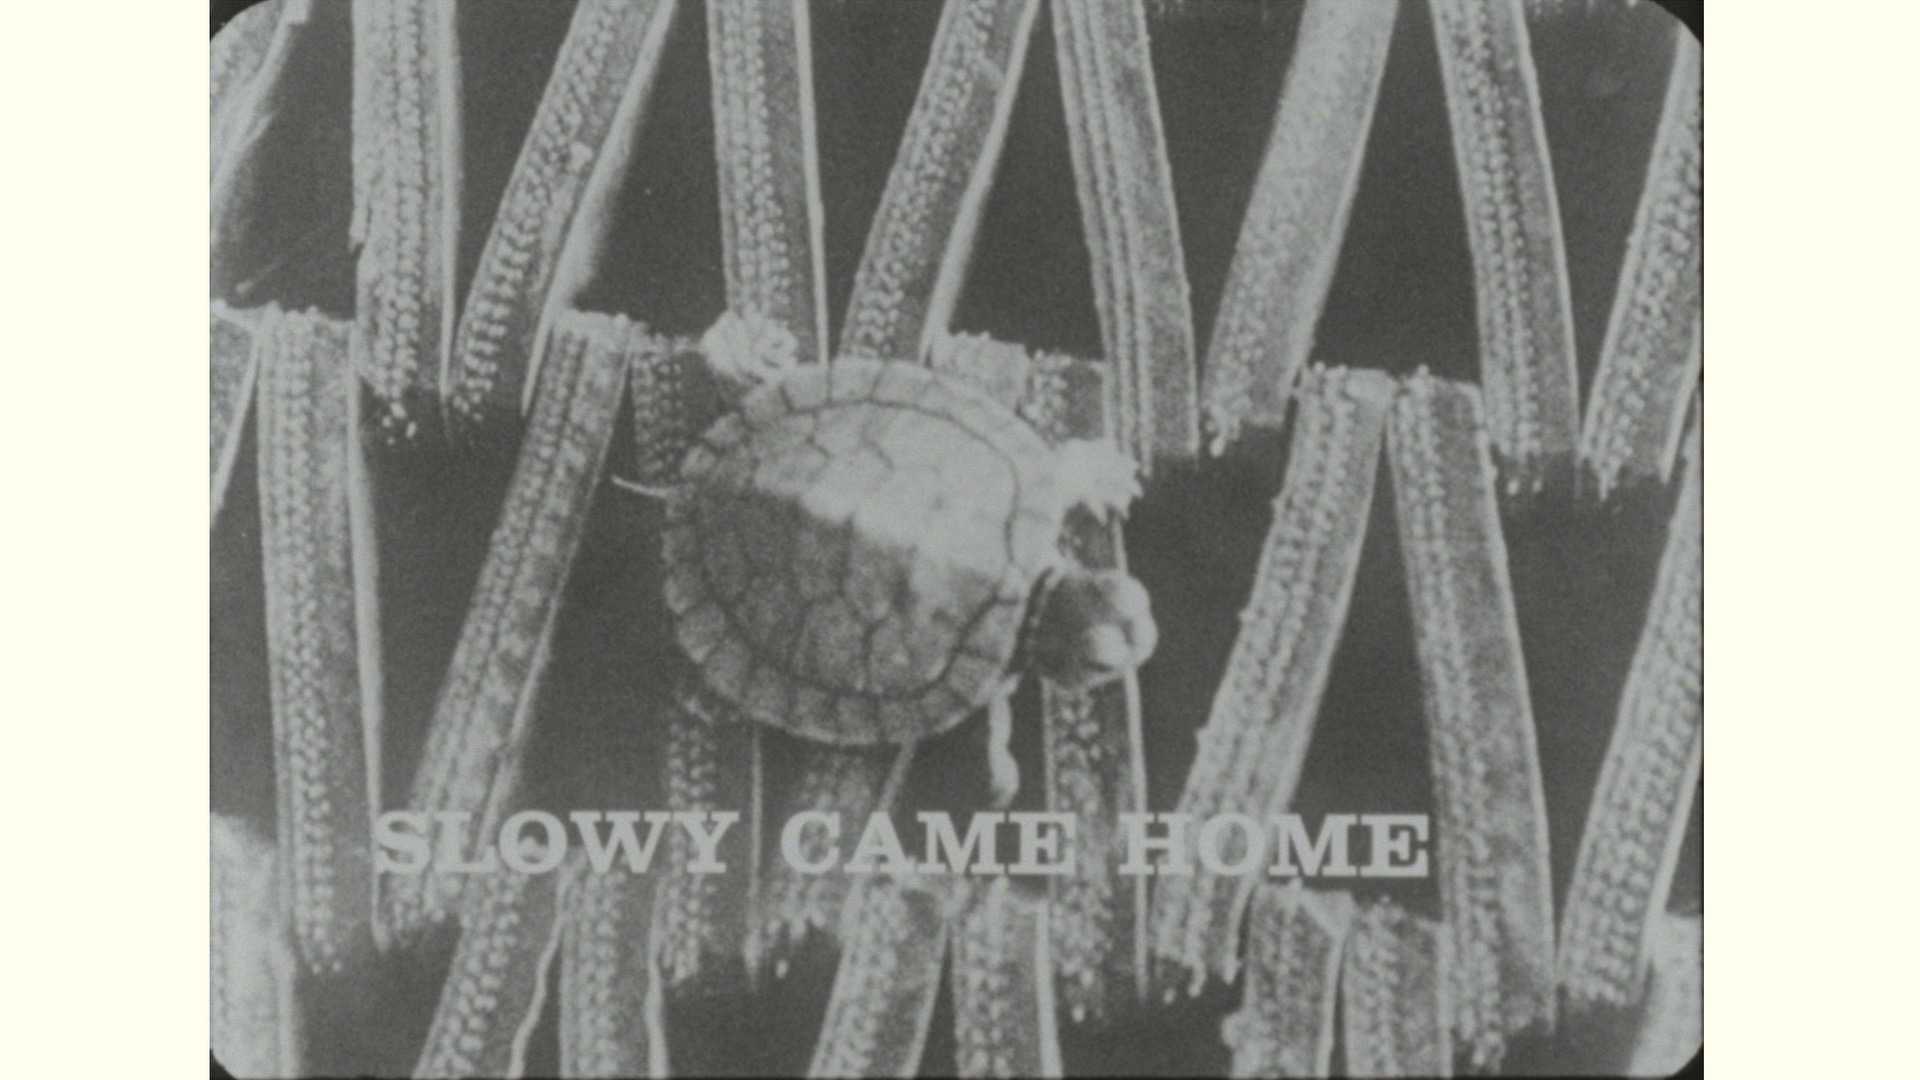 Slowy Came Home, 1963